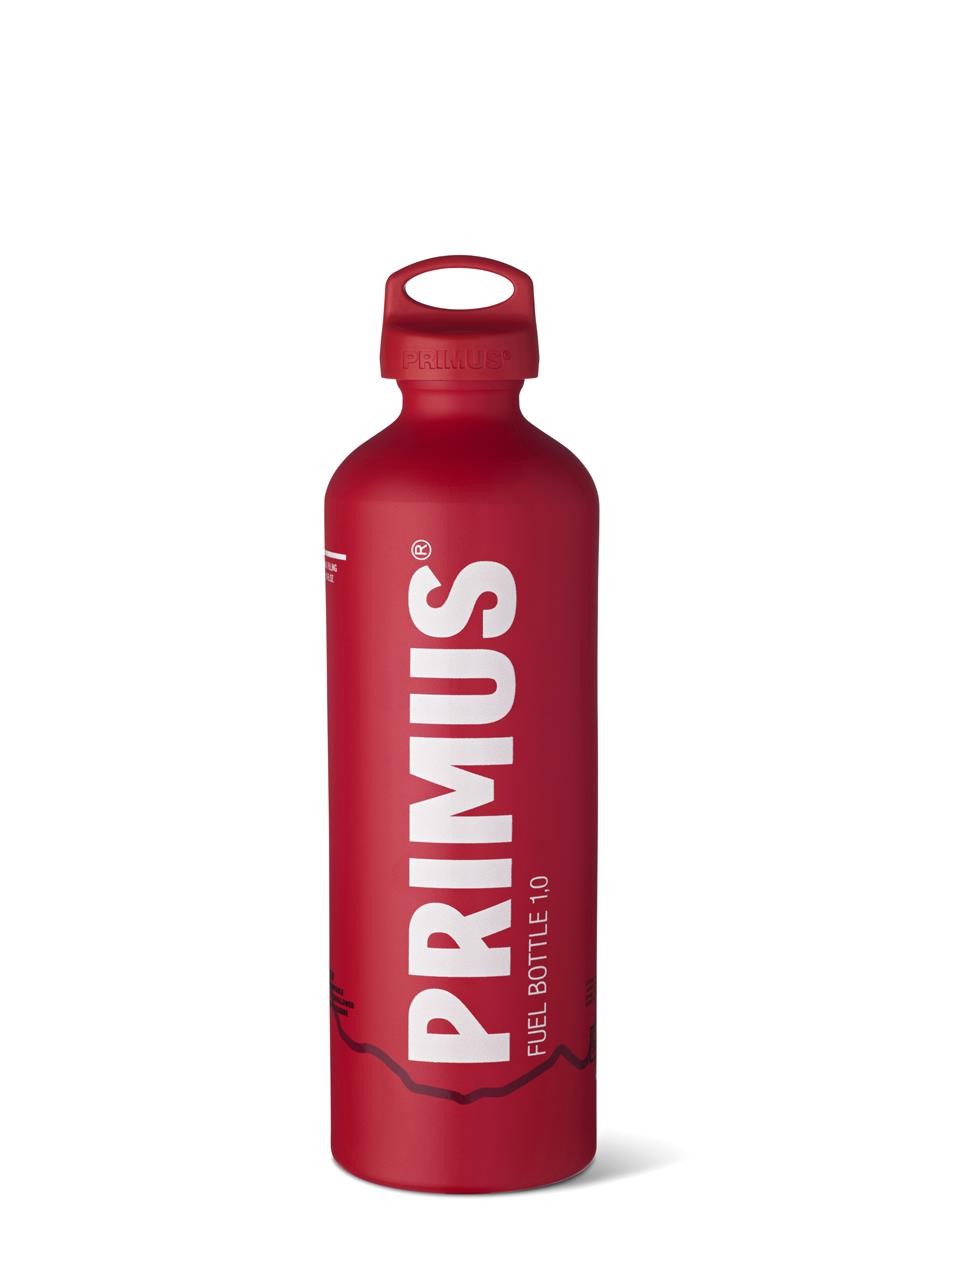 Brennstoffflasche von Primus